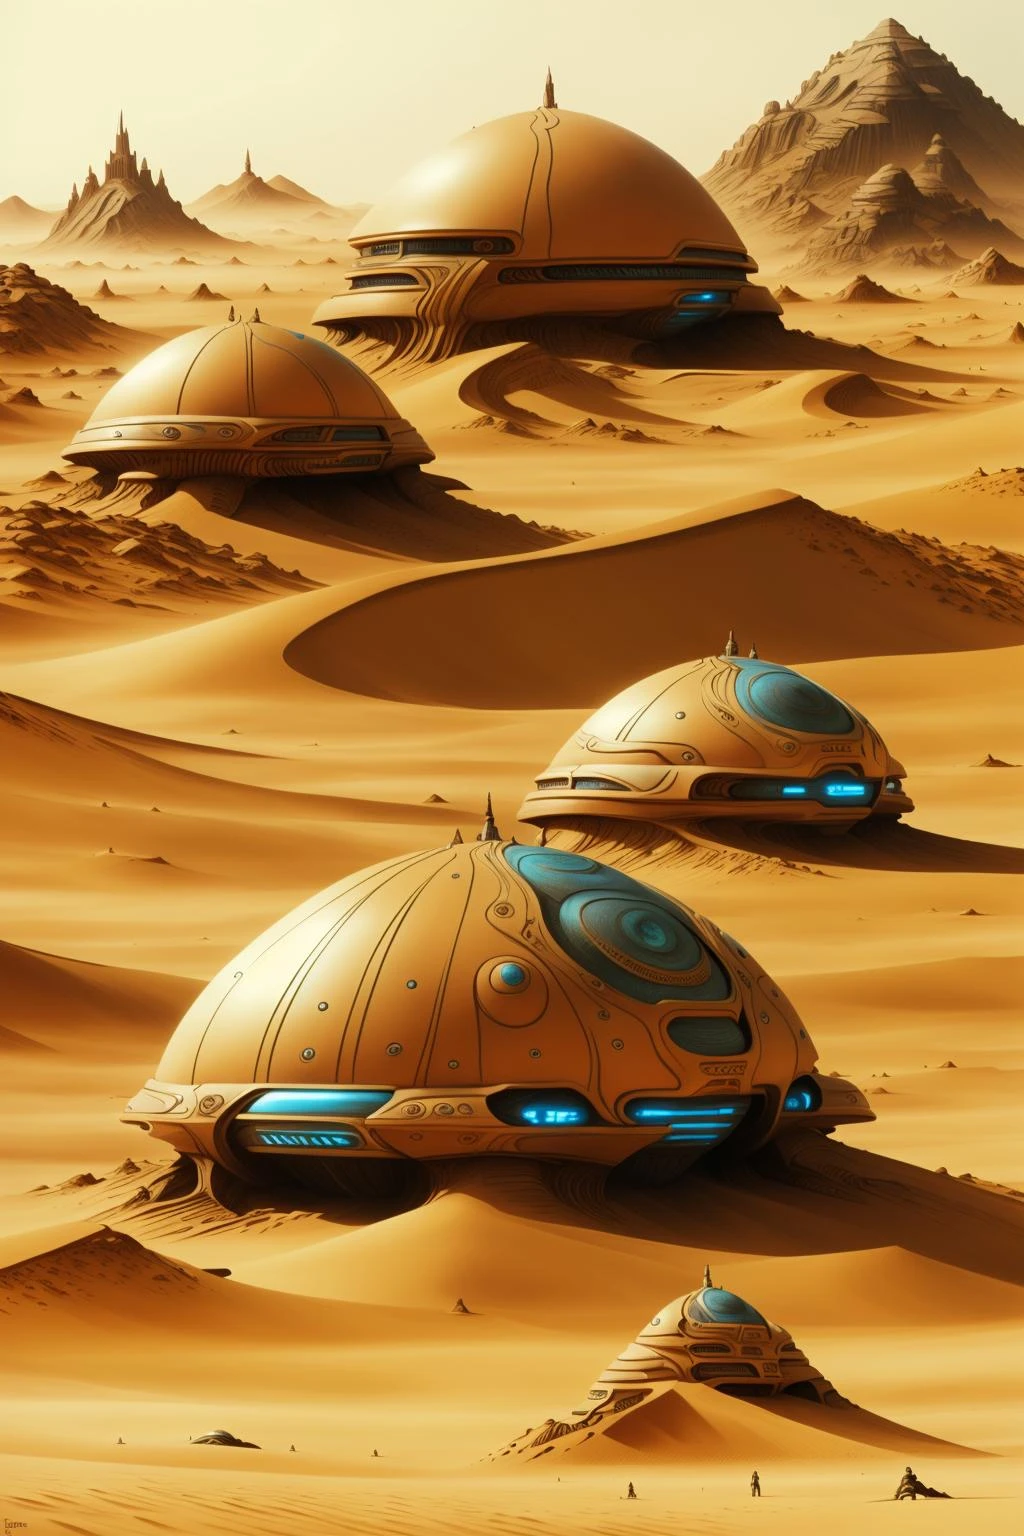 персонаж из фильма Дюна, a futuristic city in the пустыня with a giant dome , на открытом воздухе, несколько мальчиков, пейзаж, гора, песок, космический корабль, пустыня , научная фантастика, пара камней посреди поля